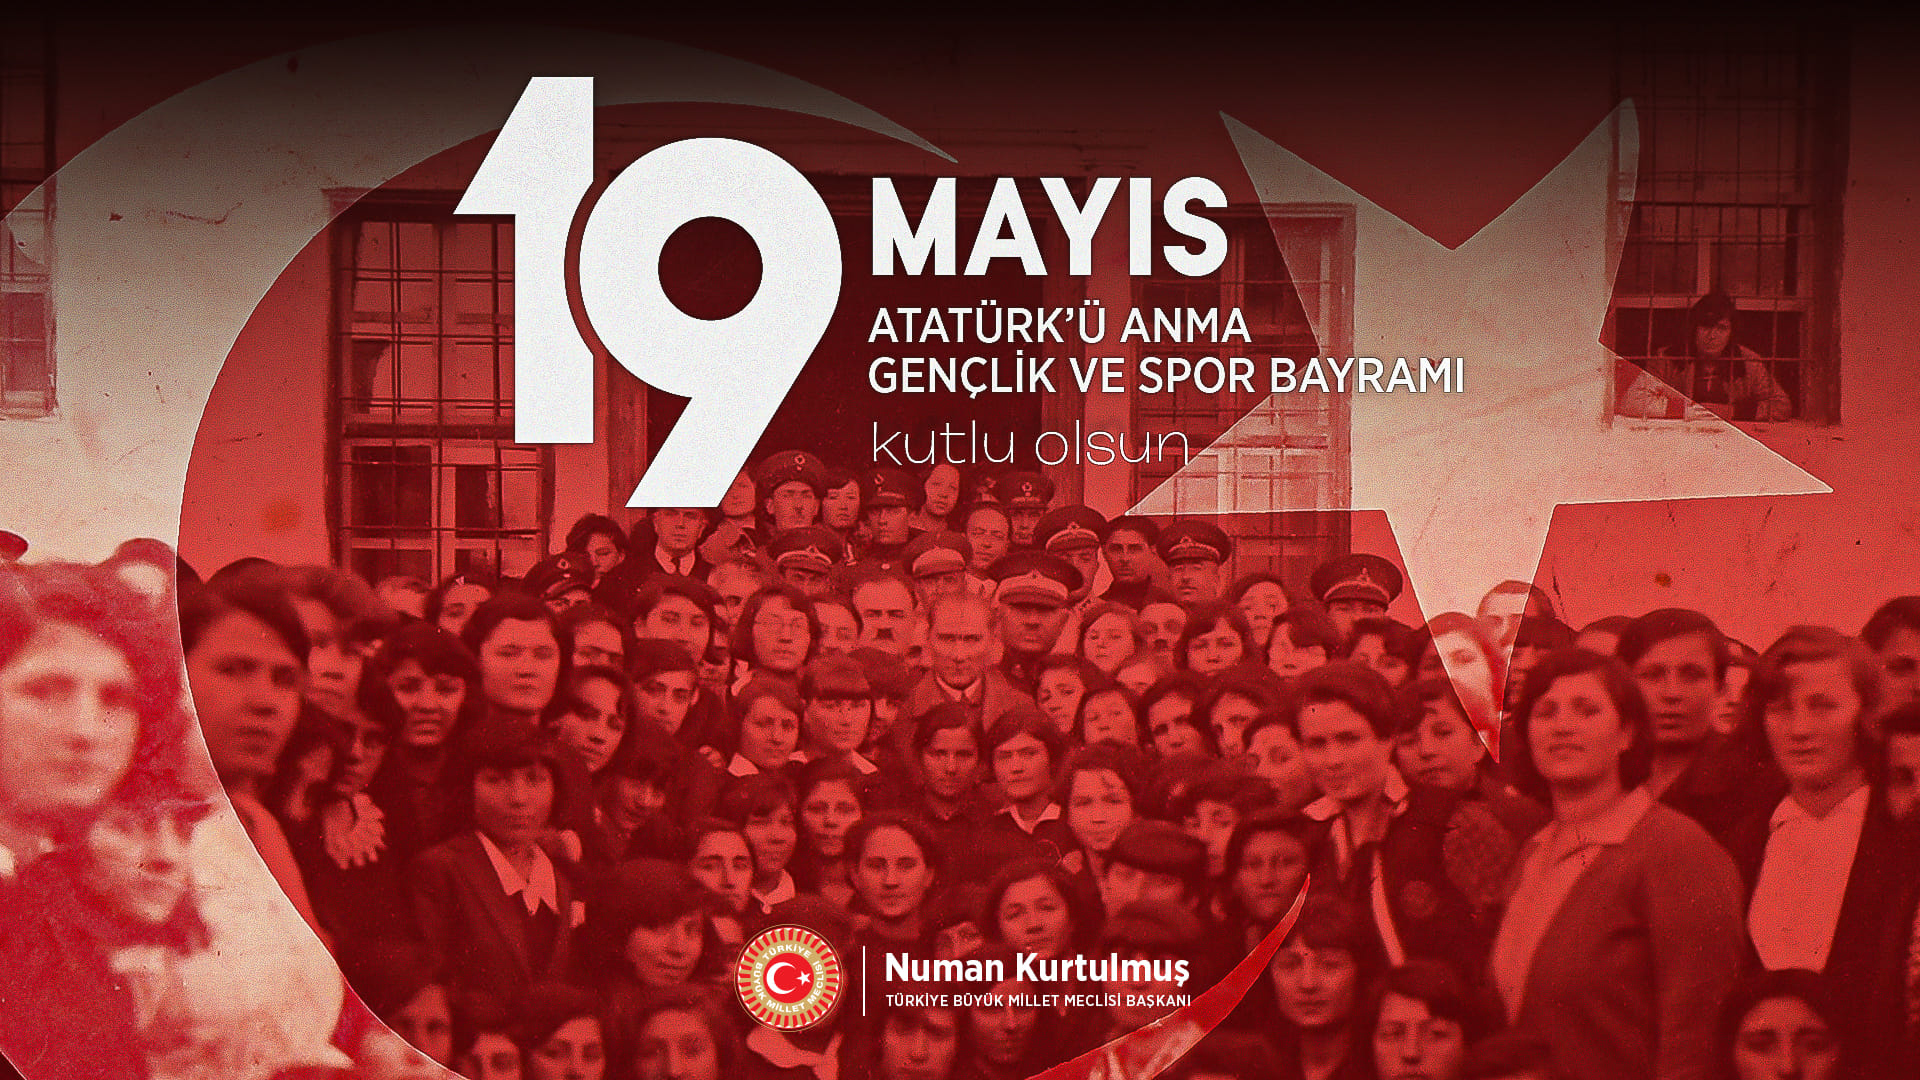 TBMM Başkanı Numan Kurtulmuş: 19 Mayıs Türk Gençliğine Bırakılmış En Değerli Miraslardan Biri